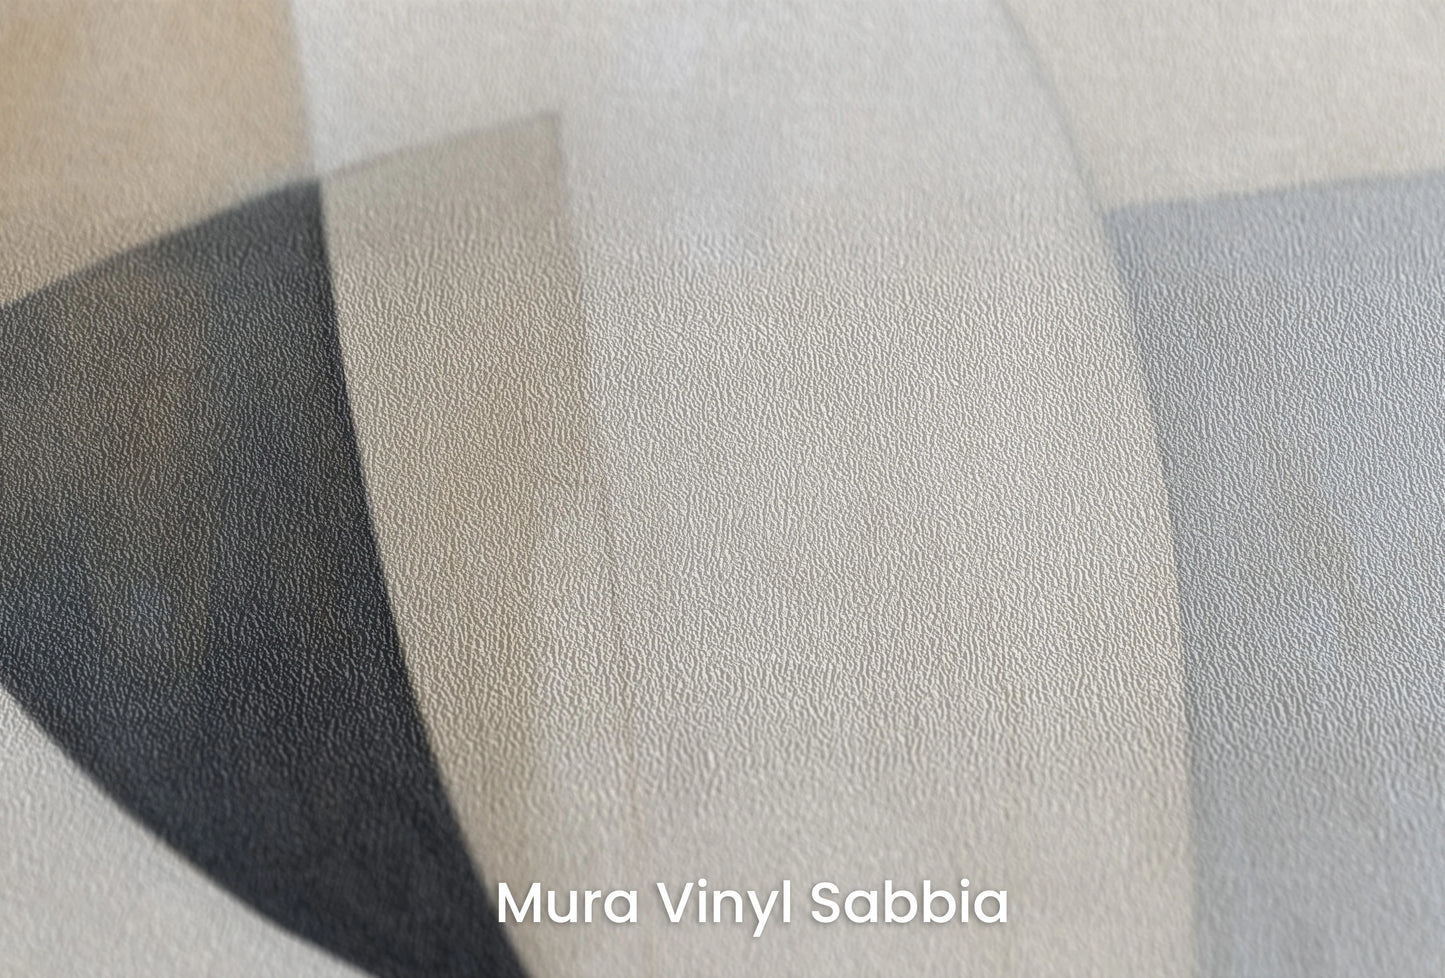 Zbliżenie na artystyczną fototapetę o nazwie Curved Tranquility #2 na podłożu Mura Vinyl Sabbia struktura grubego ziarna piasku.